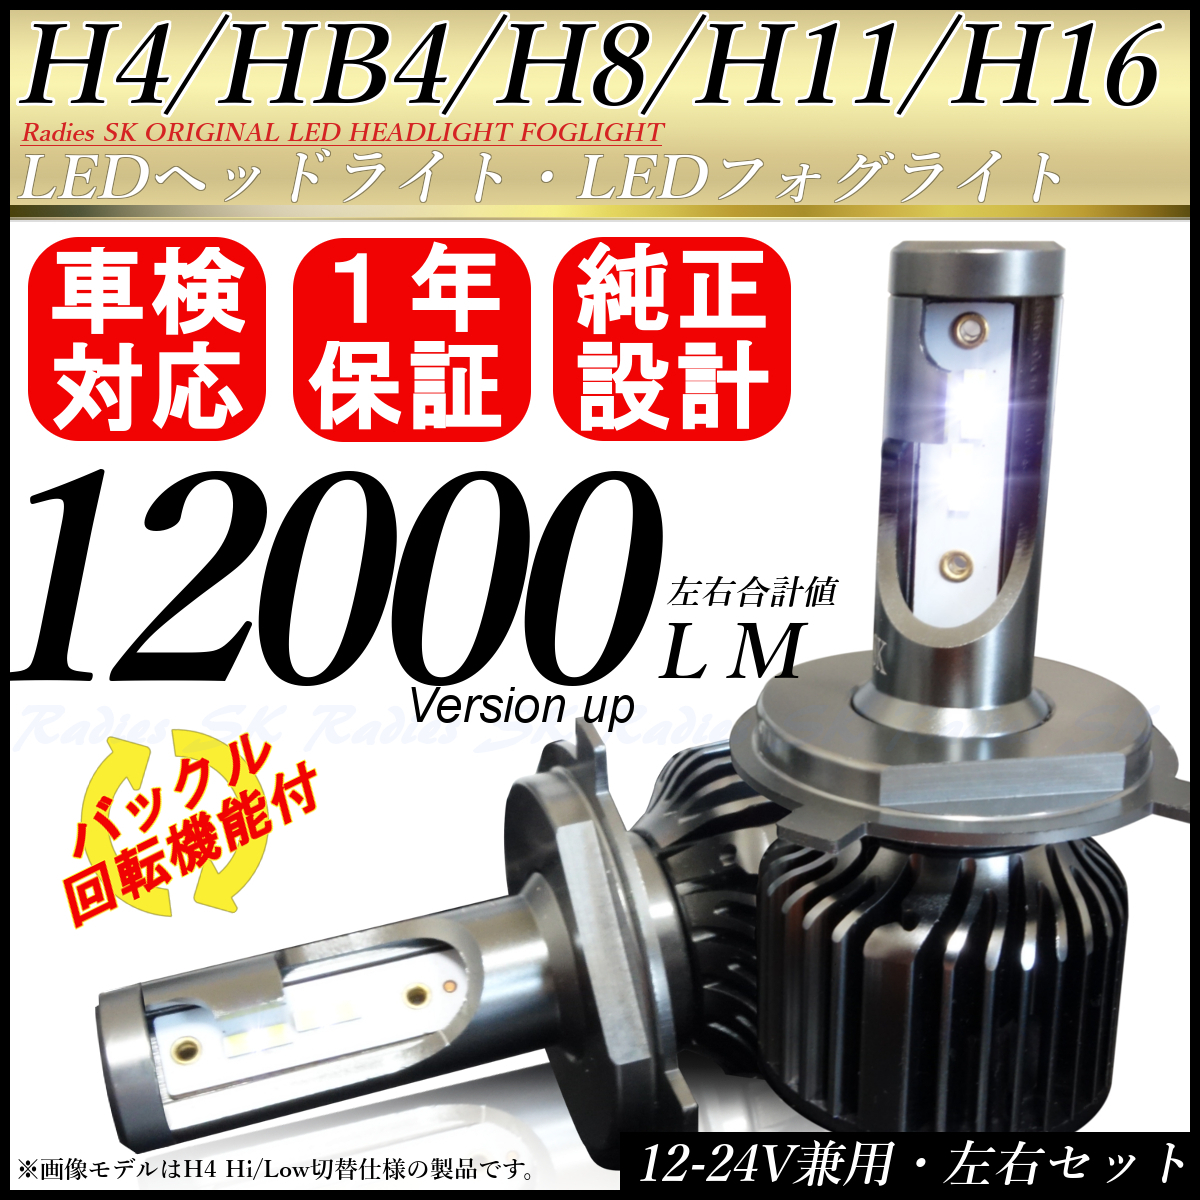  ニッサン ノート マイナー前 H4 フォグランプ LED ホワイト 6000k 12V 24V 最新バージョン 1年保証 12万cd_画像1